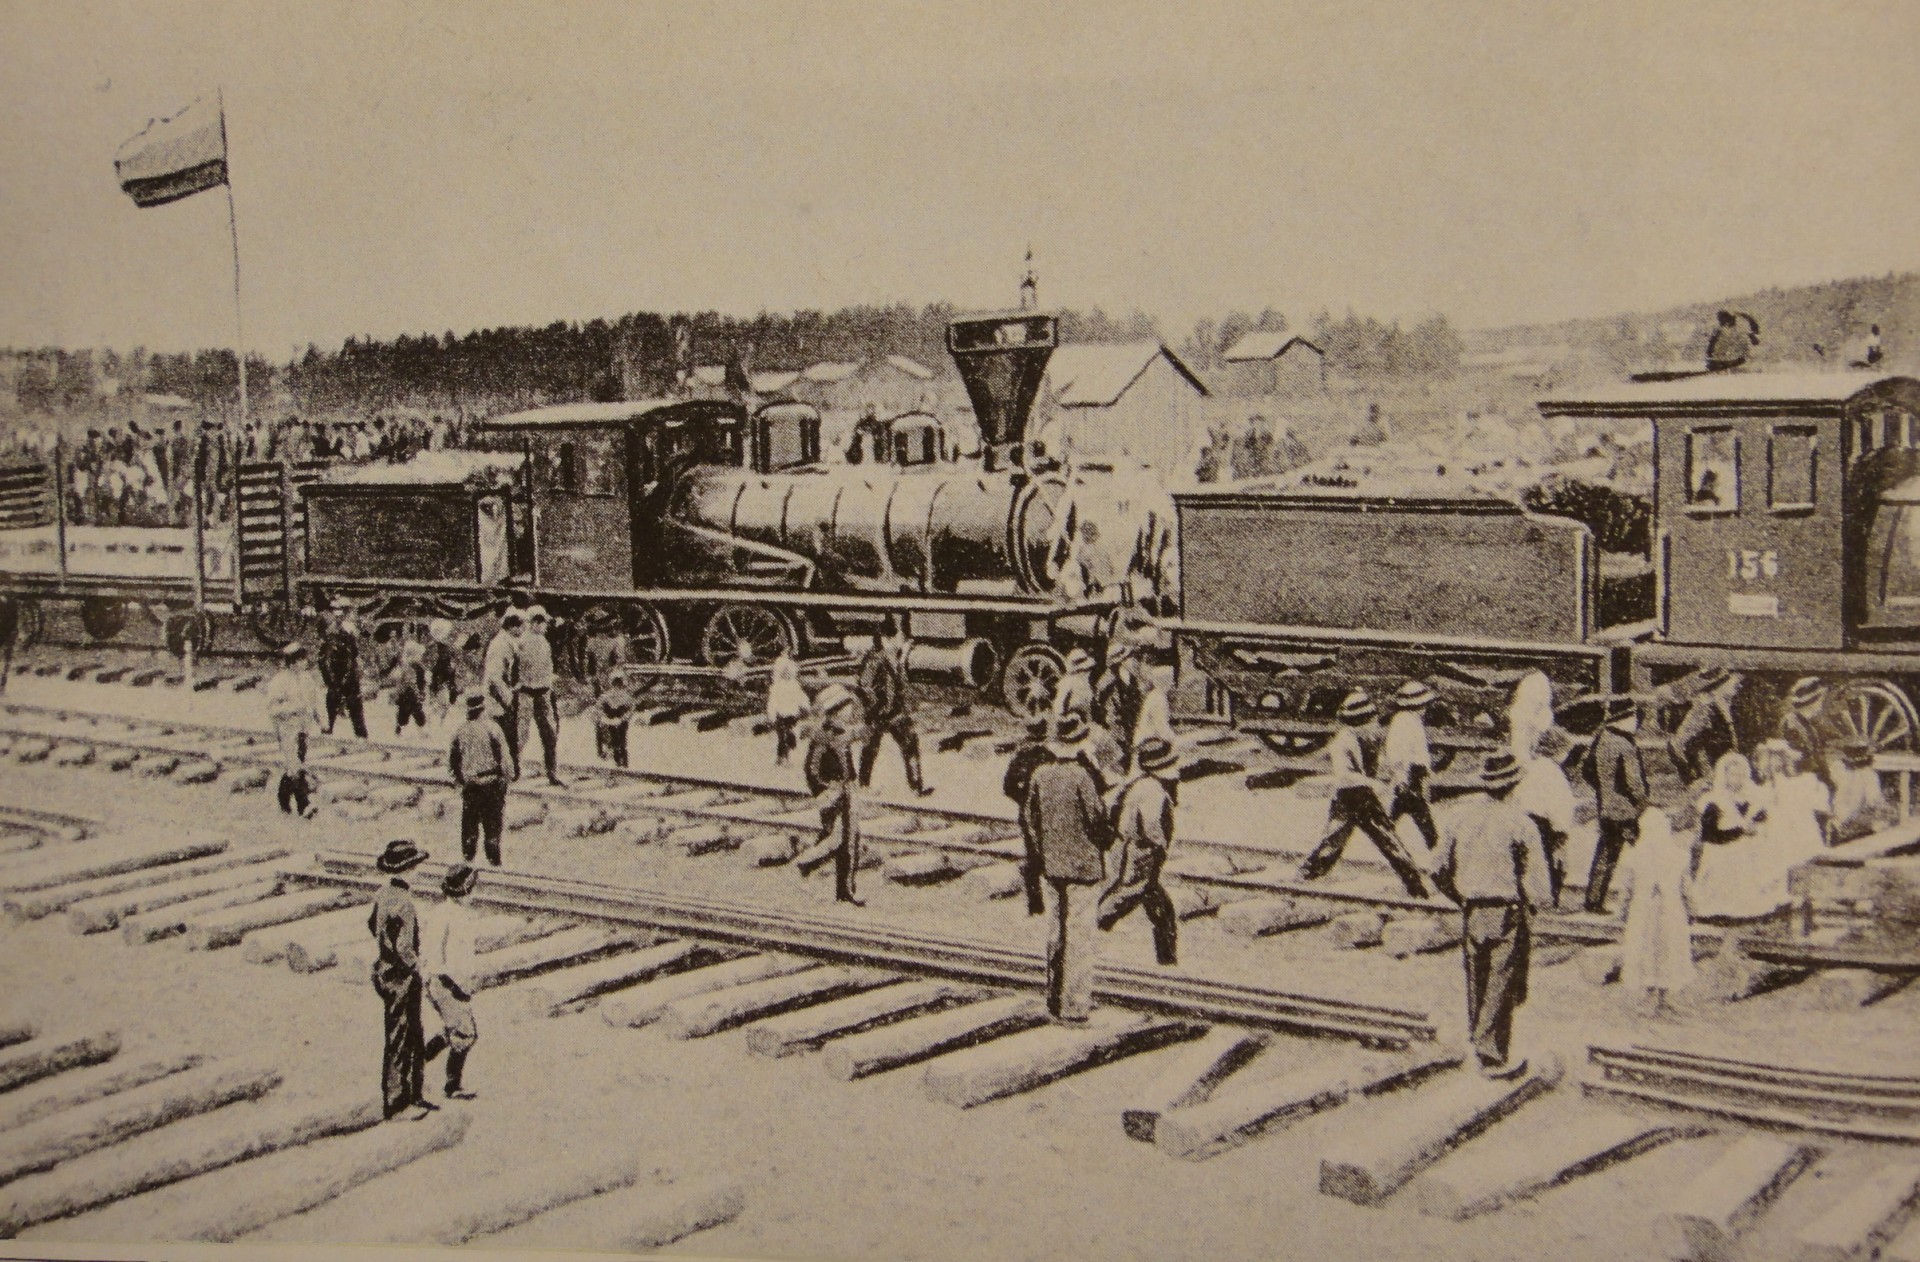 Ensimmäinen juna saapuu Kajaaniin 1904.